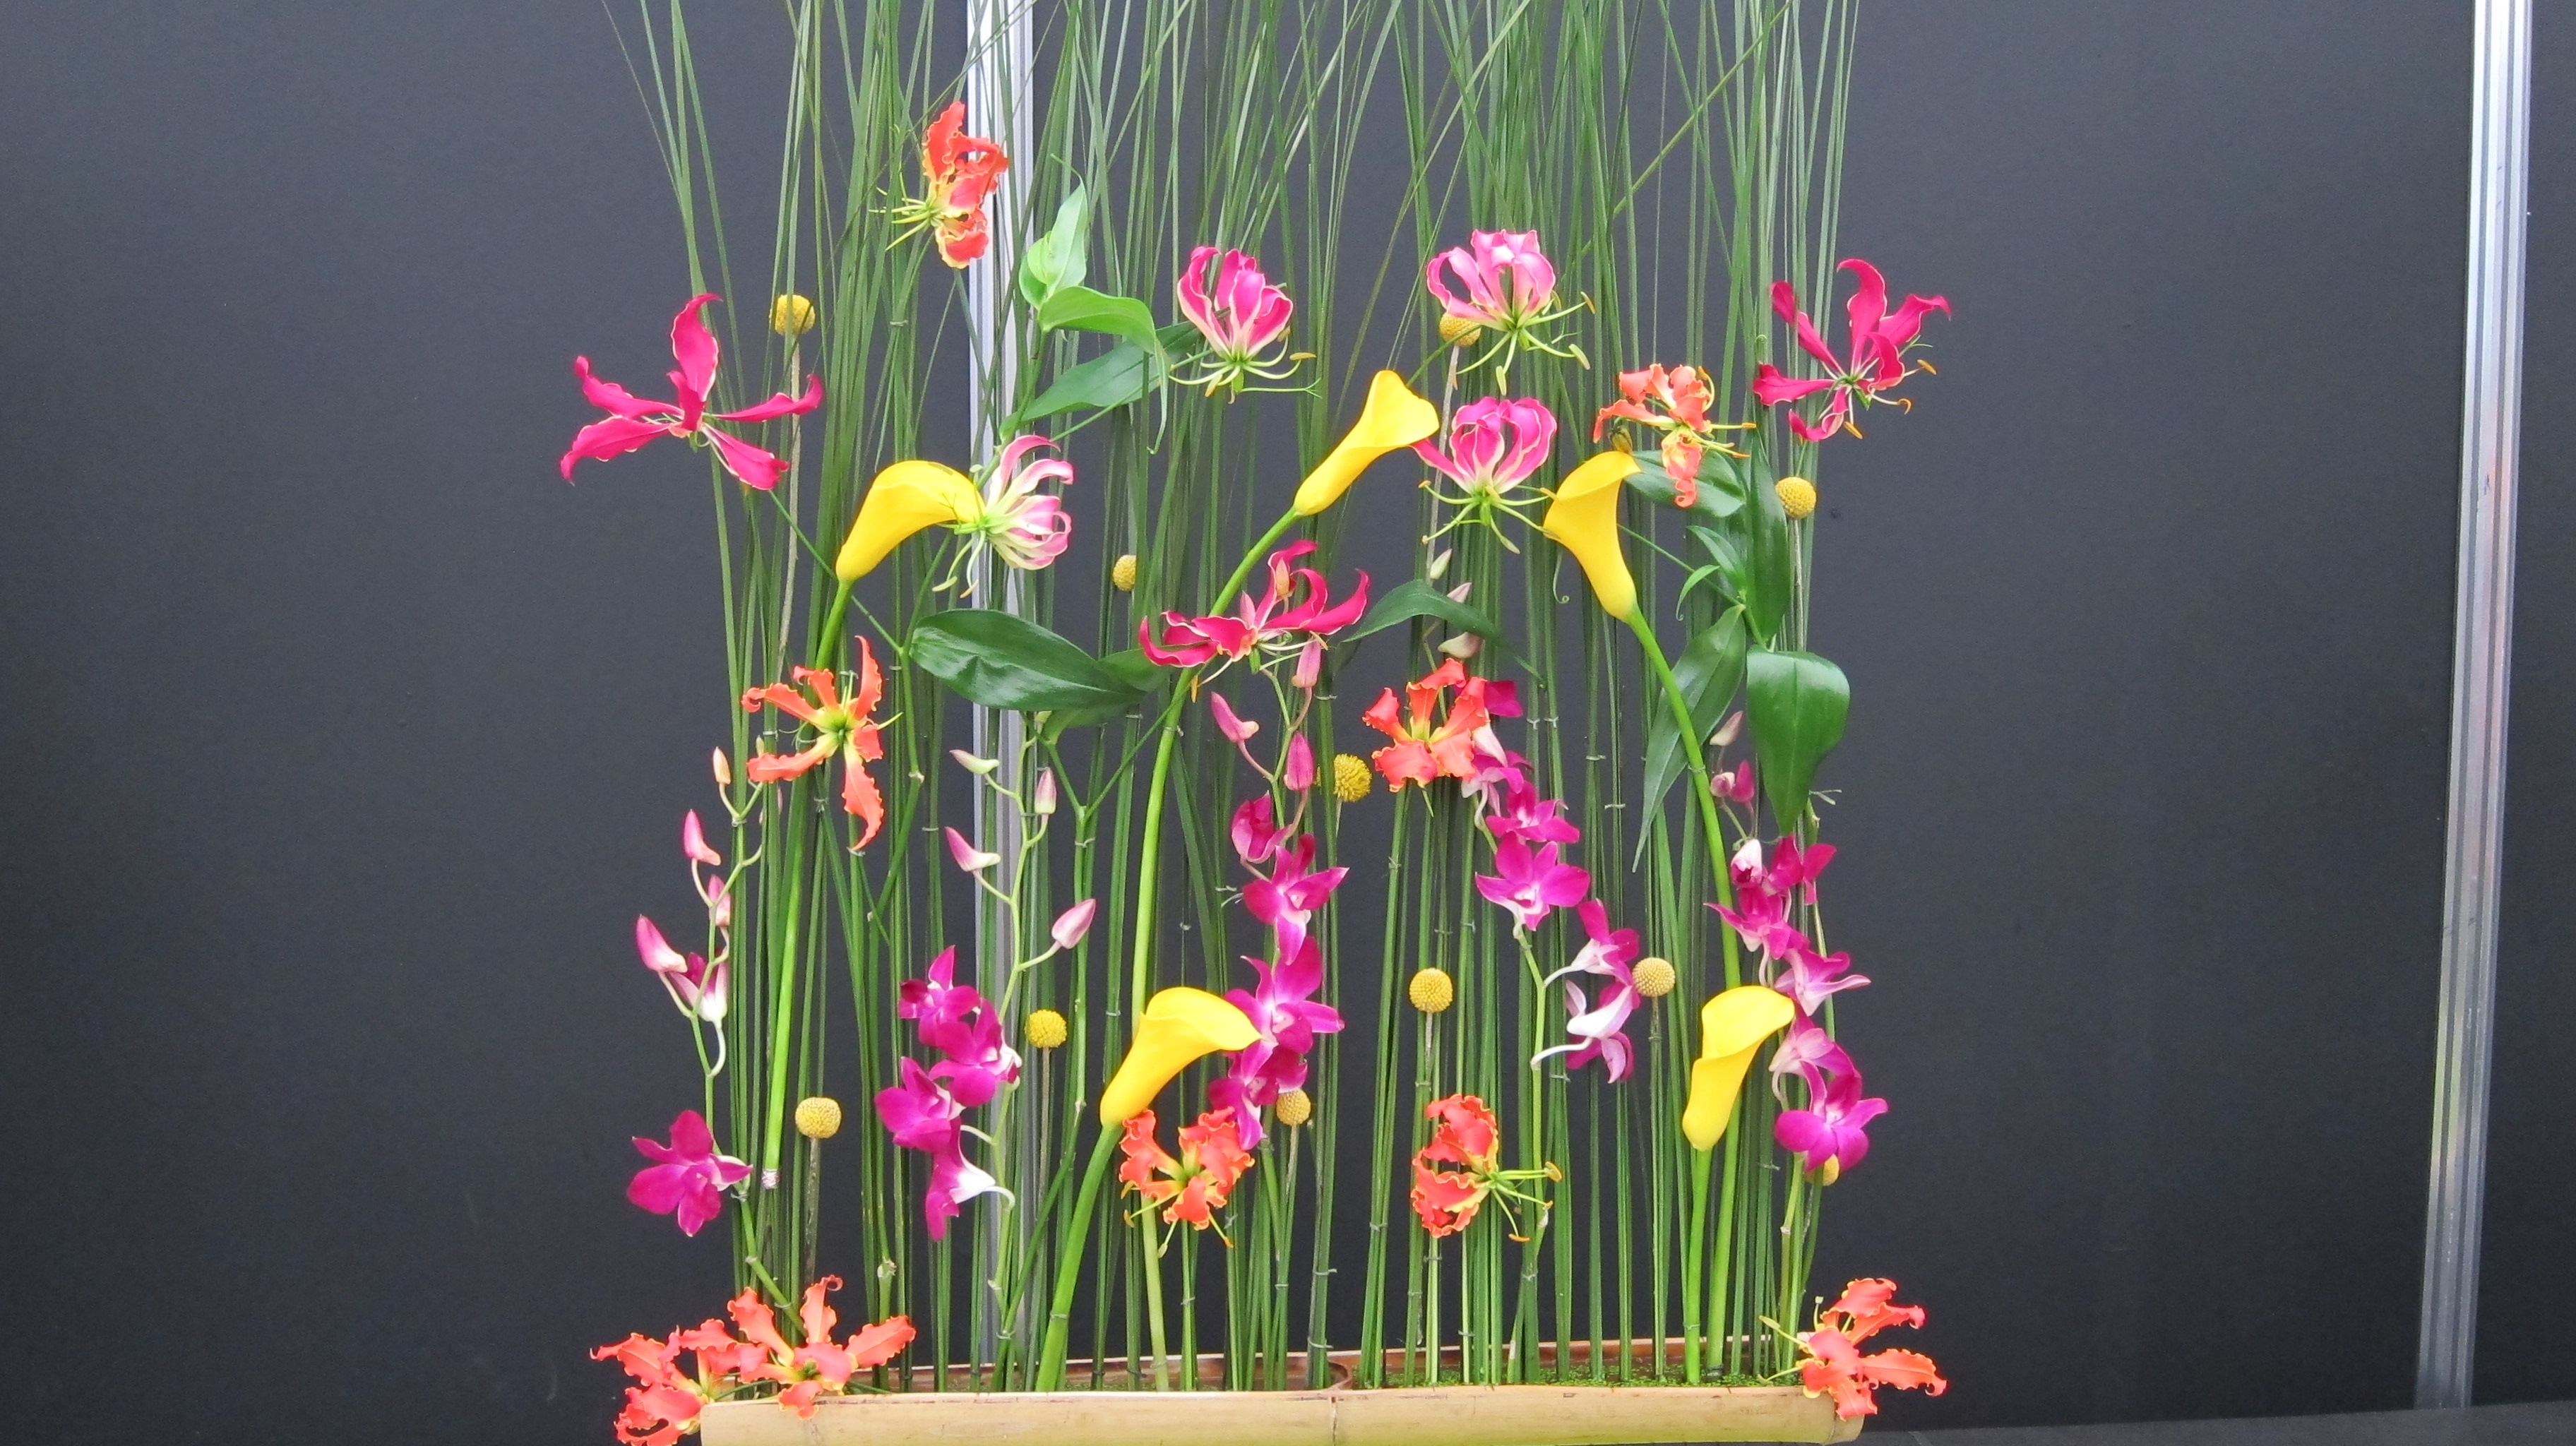 Floral display